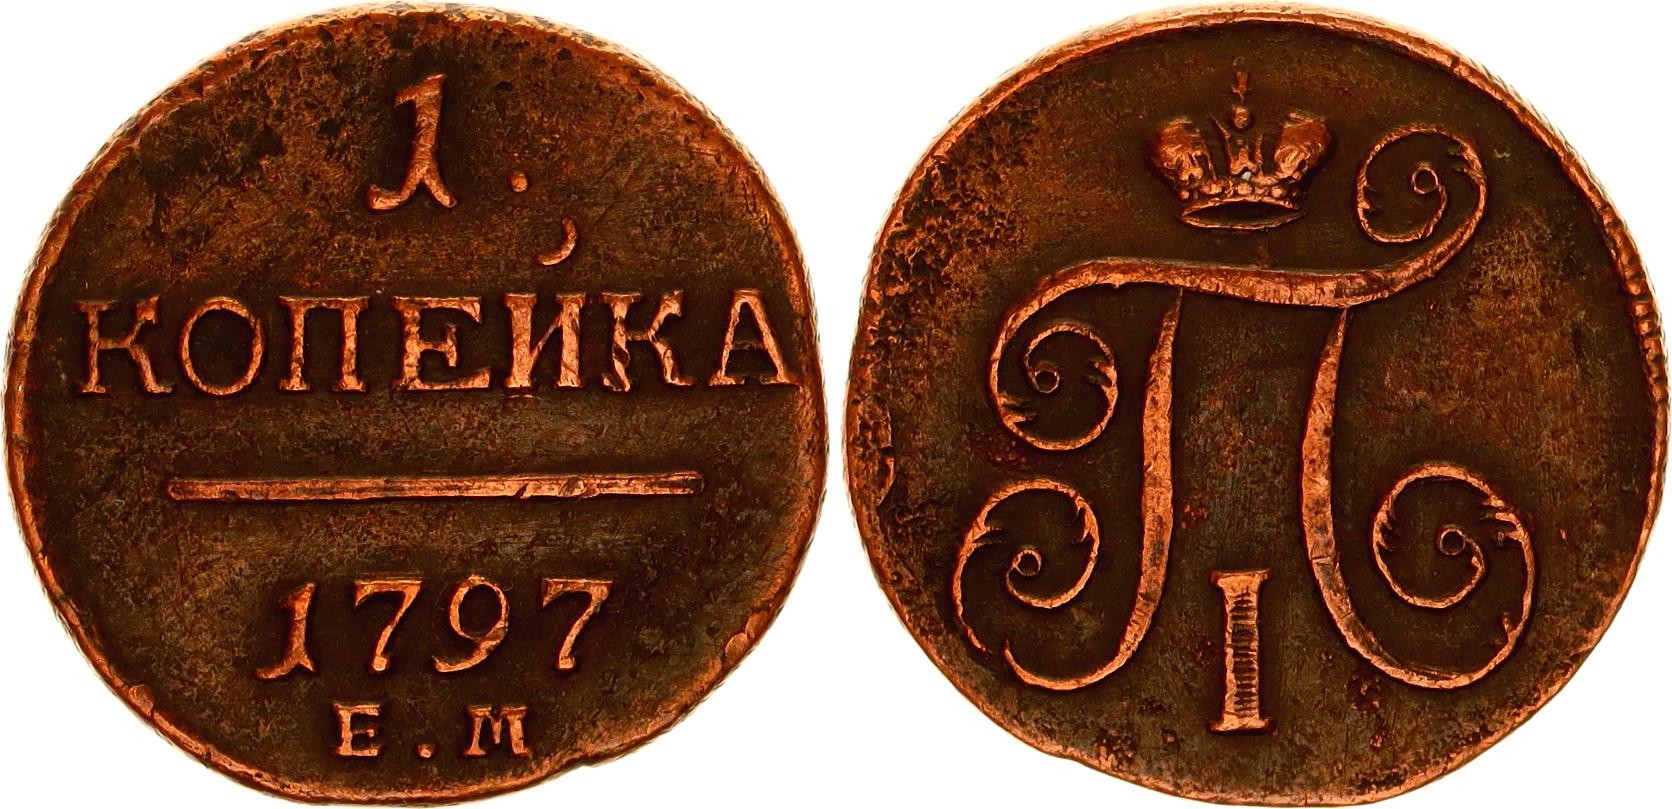 Старинная монета с буквой е и короной 1797 г. 1 Байоччb Италия 1797. Espania 1kopek. Забытая 7 букв